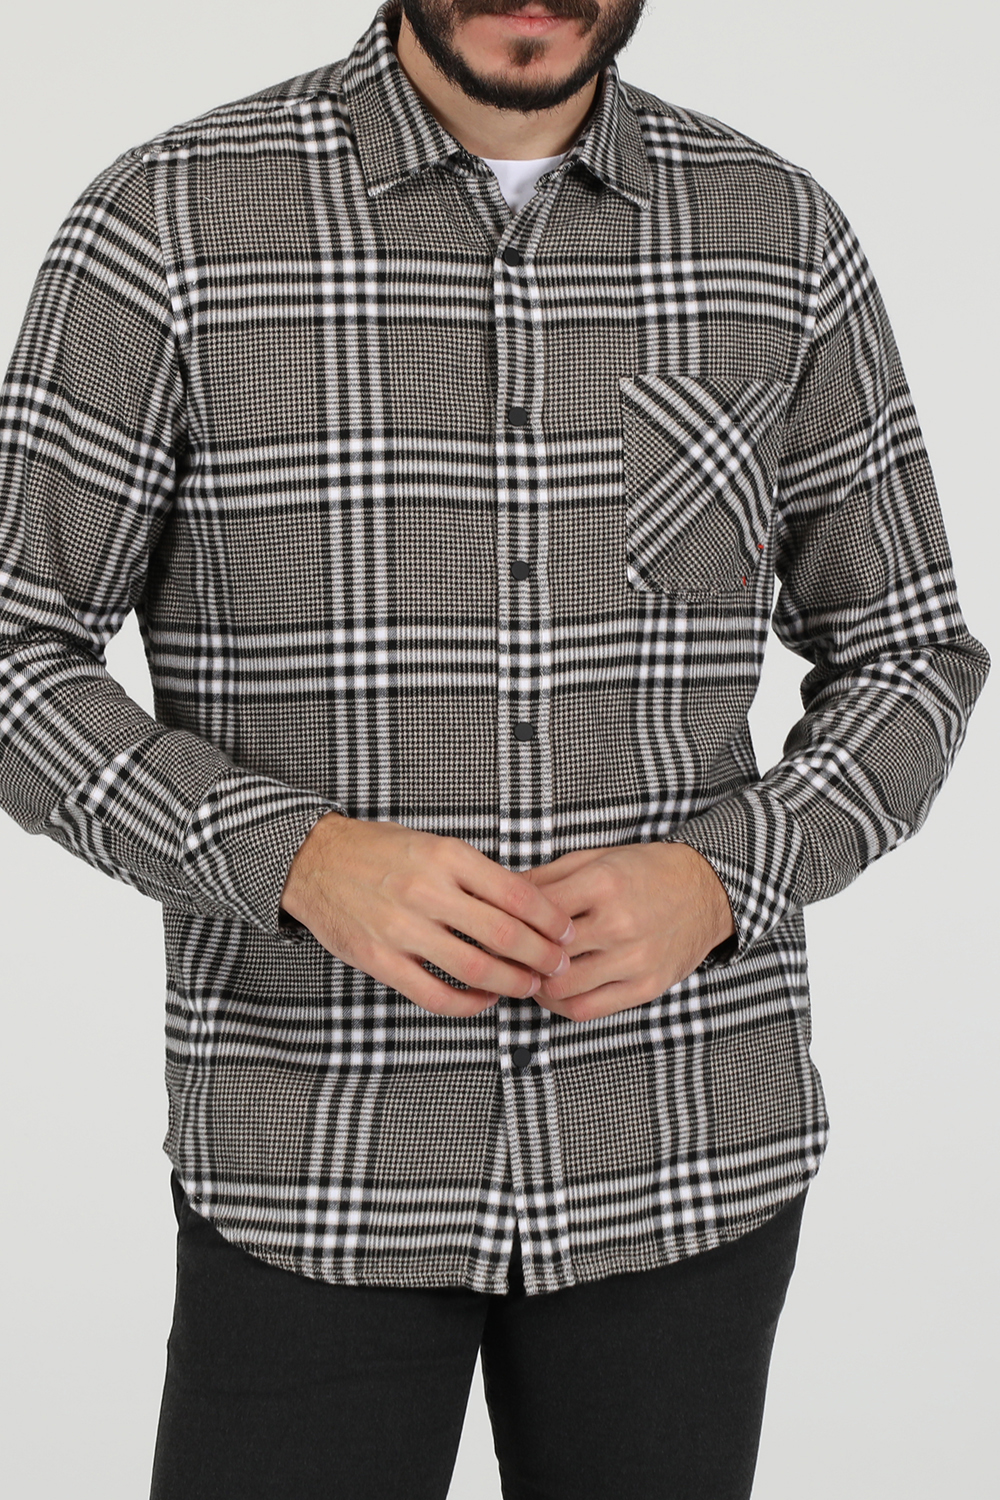 Ανδρικά/Ρούχα/Πουκάμισα/Μακρυμάνικα BOSS - Ανδρικό βαμβακερό πουκάμισο BOSS Riou μπεζ